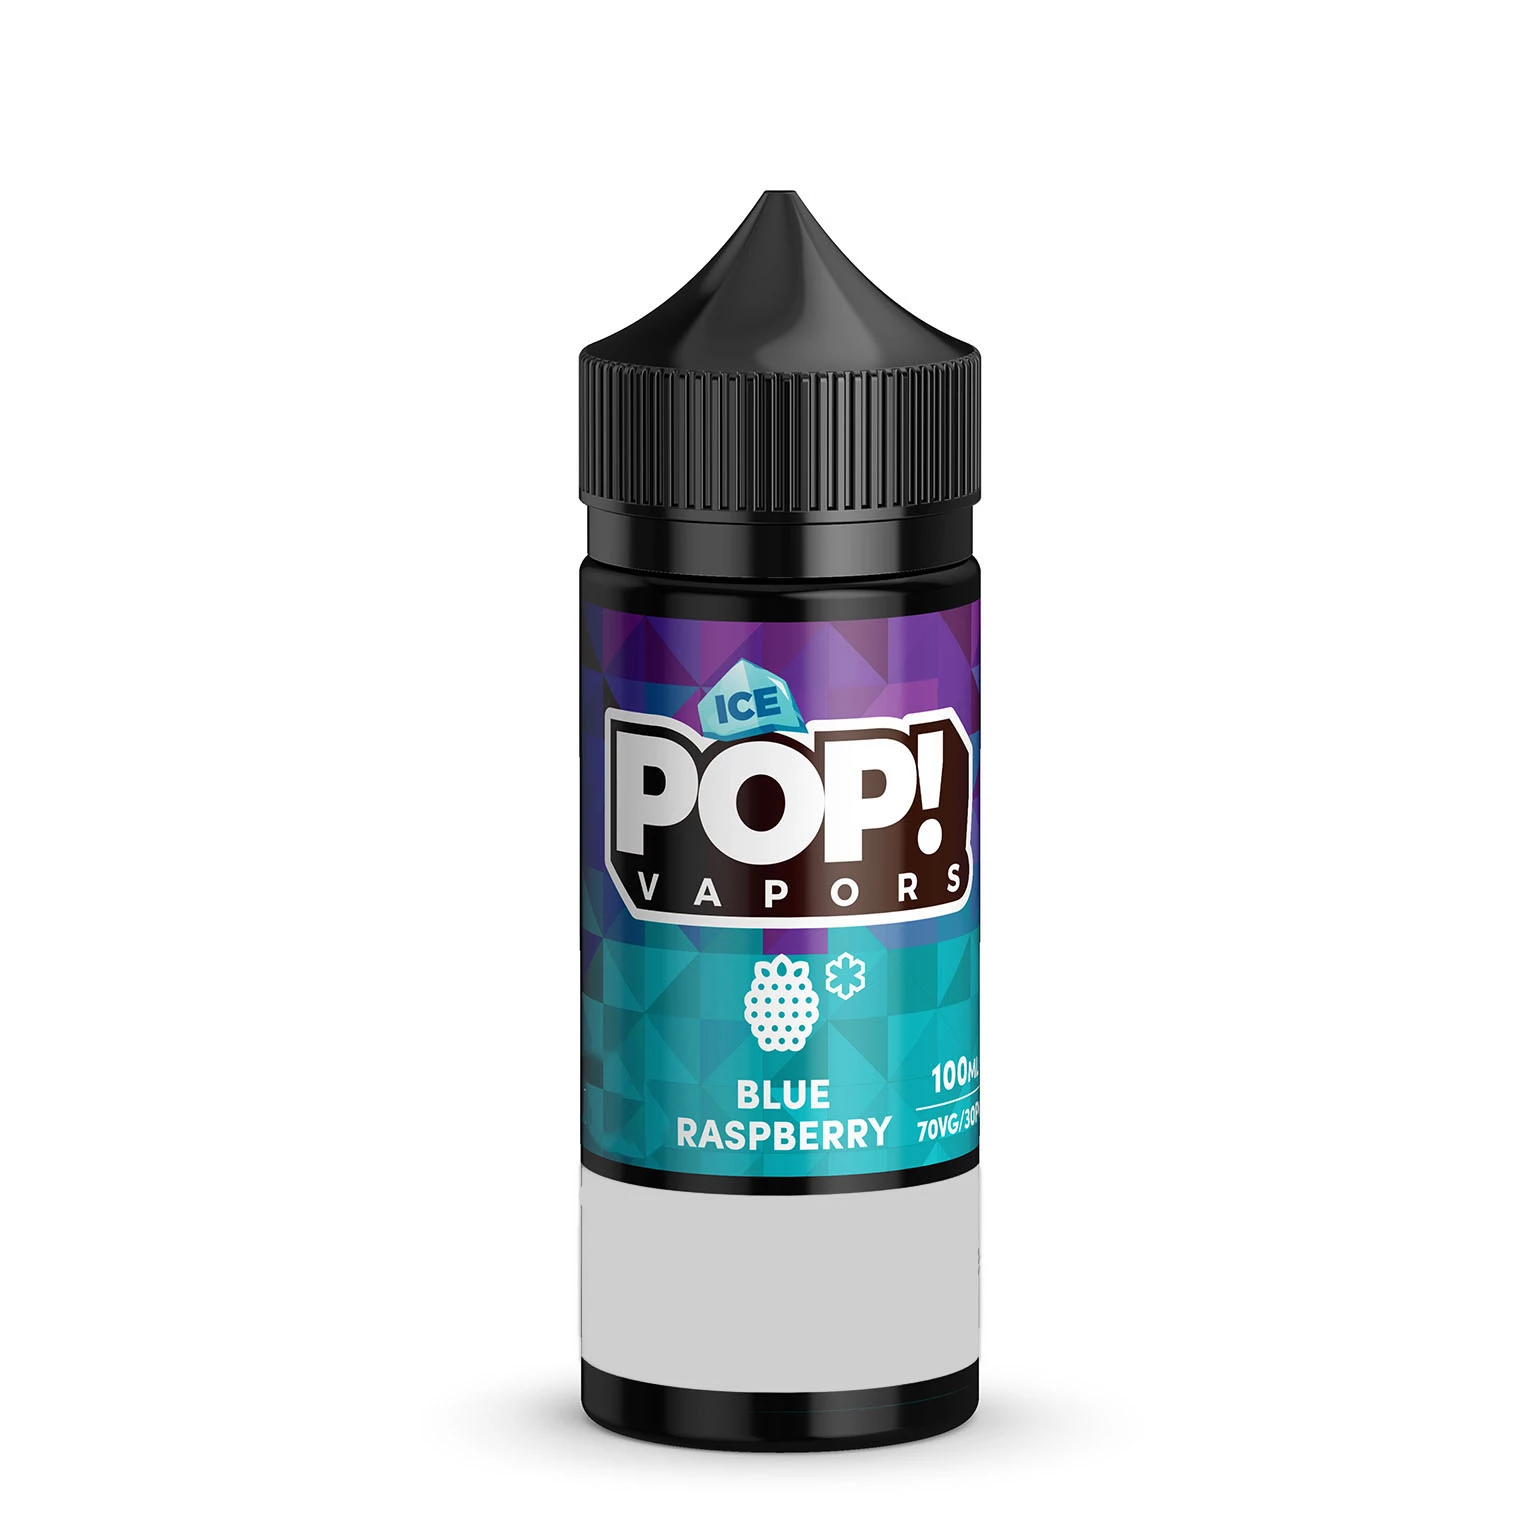 Iced-BlueRaspberry-Pop!Vapors